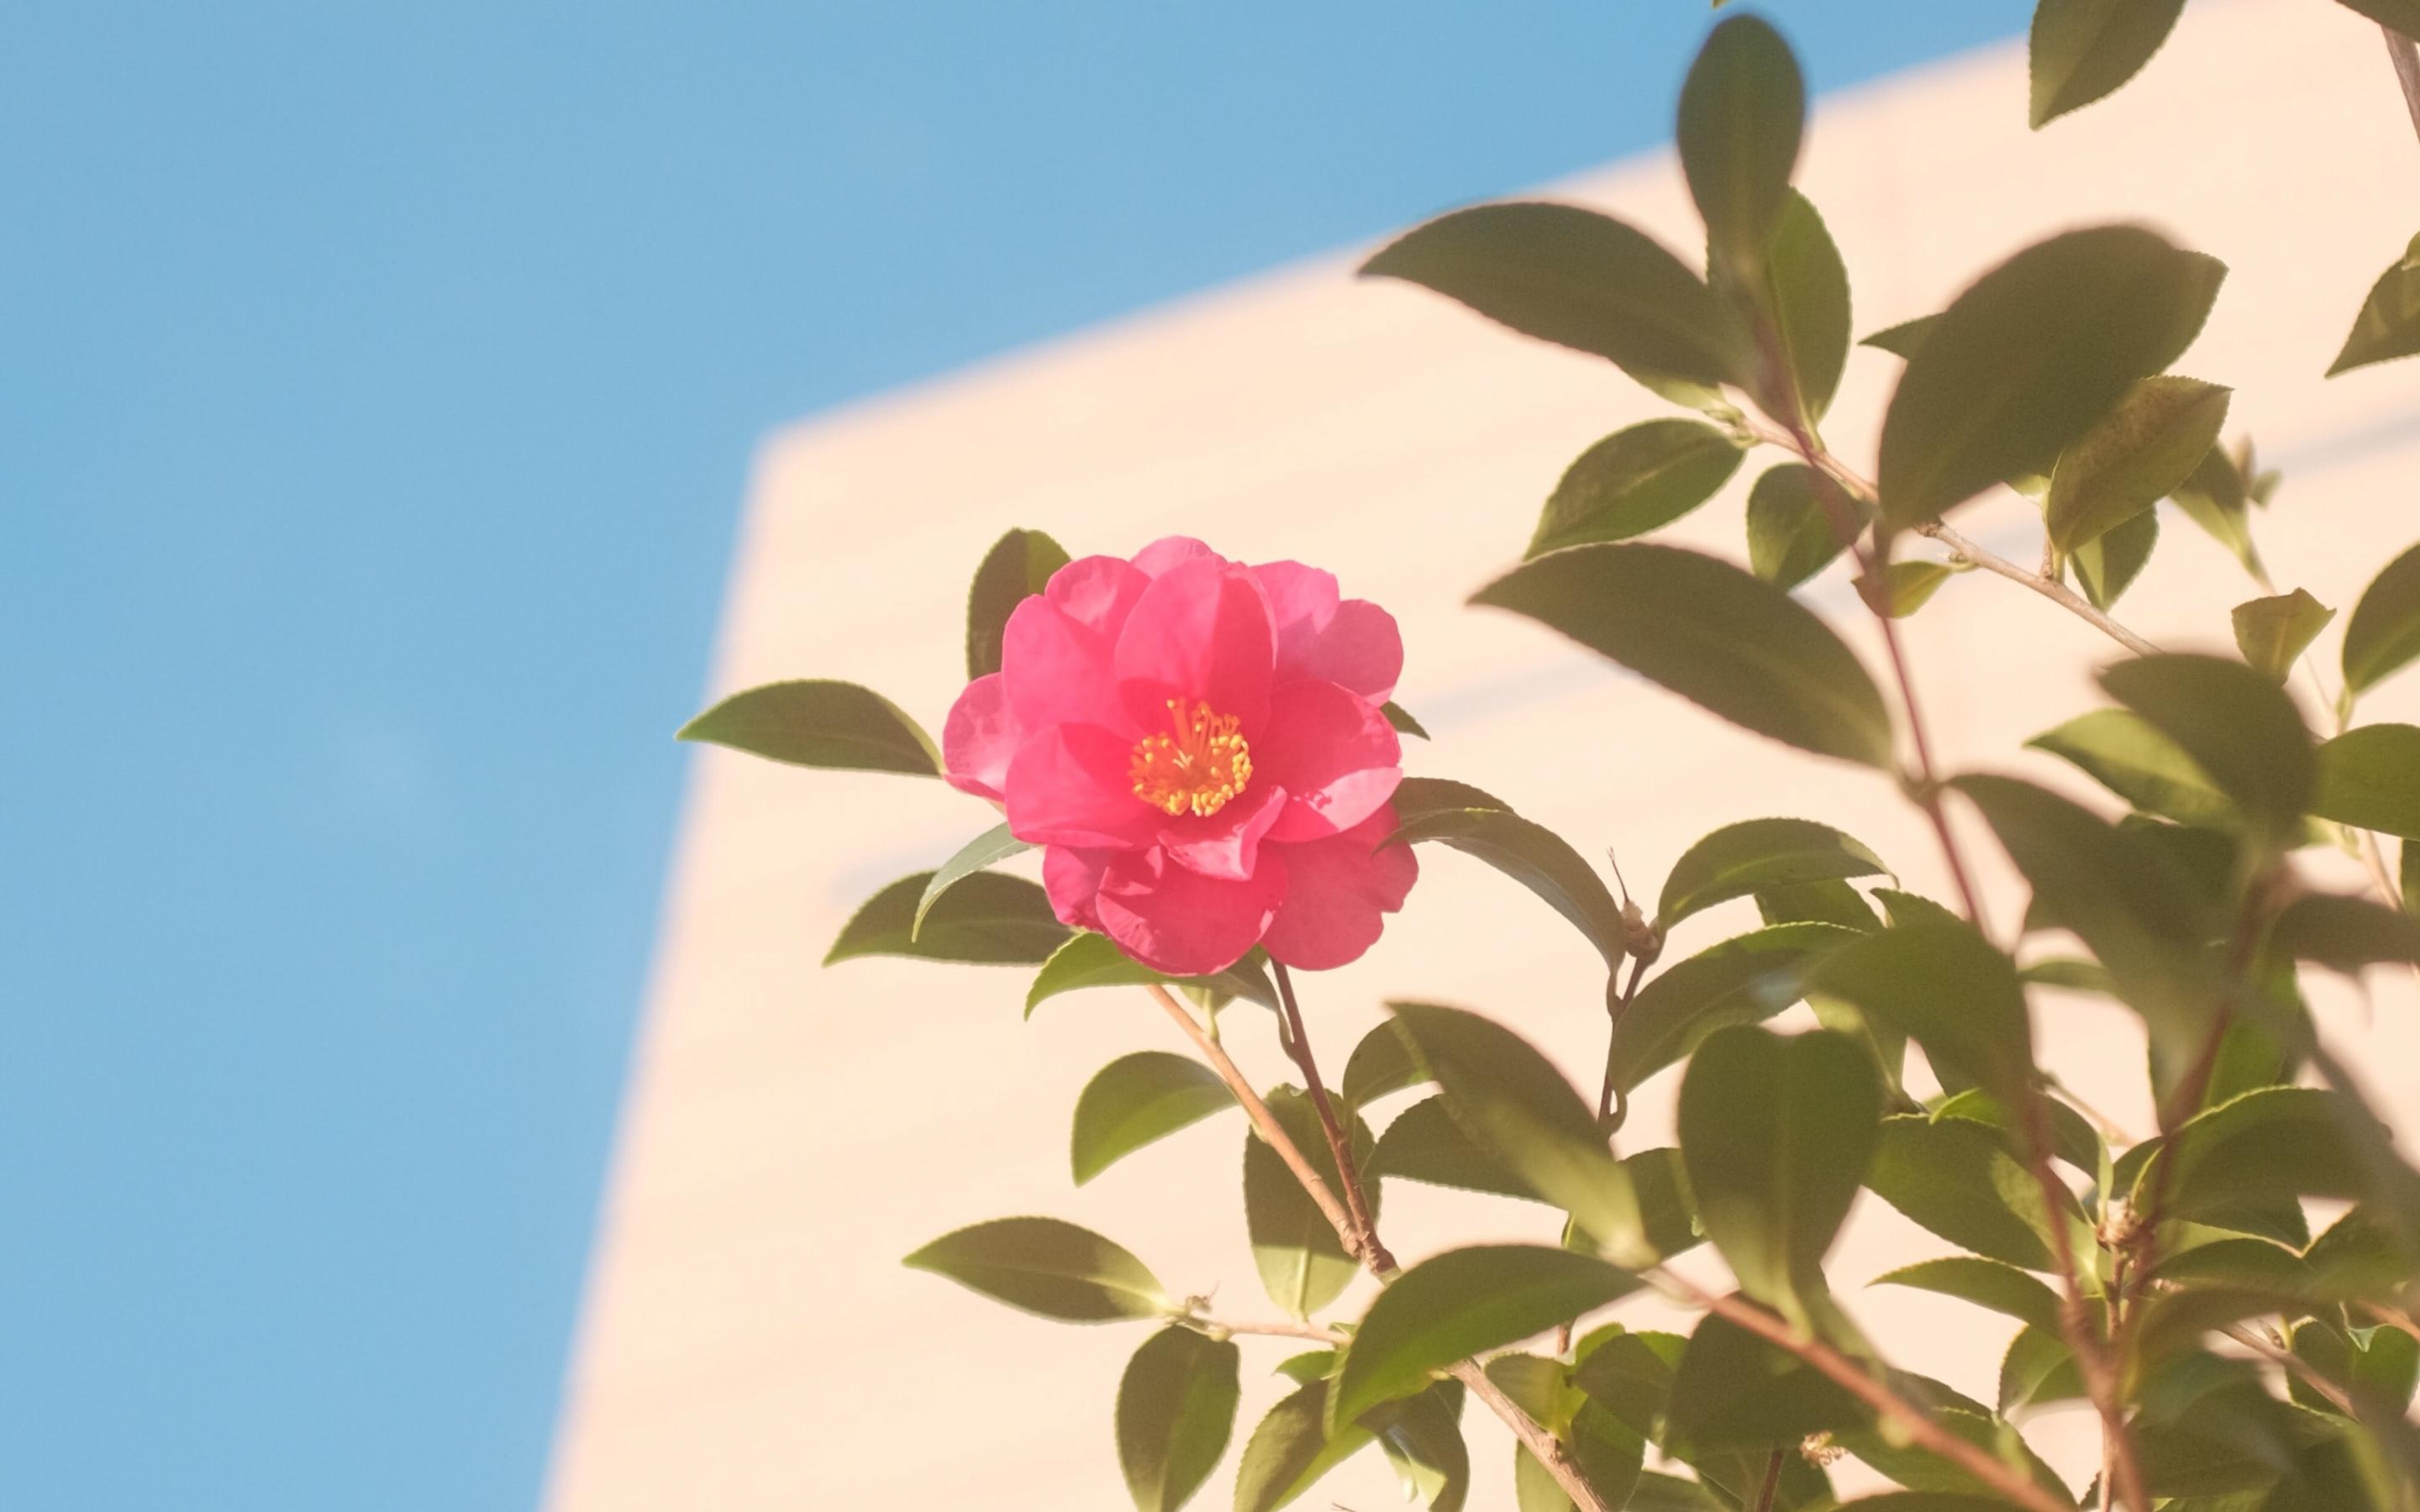 粉红色的花朵犹如披着彩衣的少女摄影大图